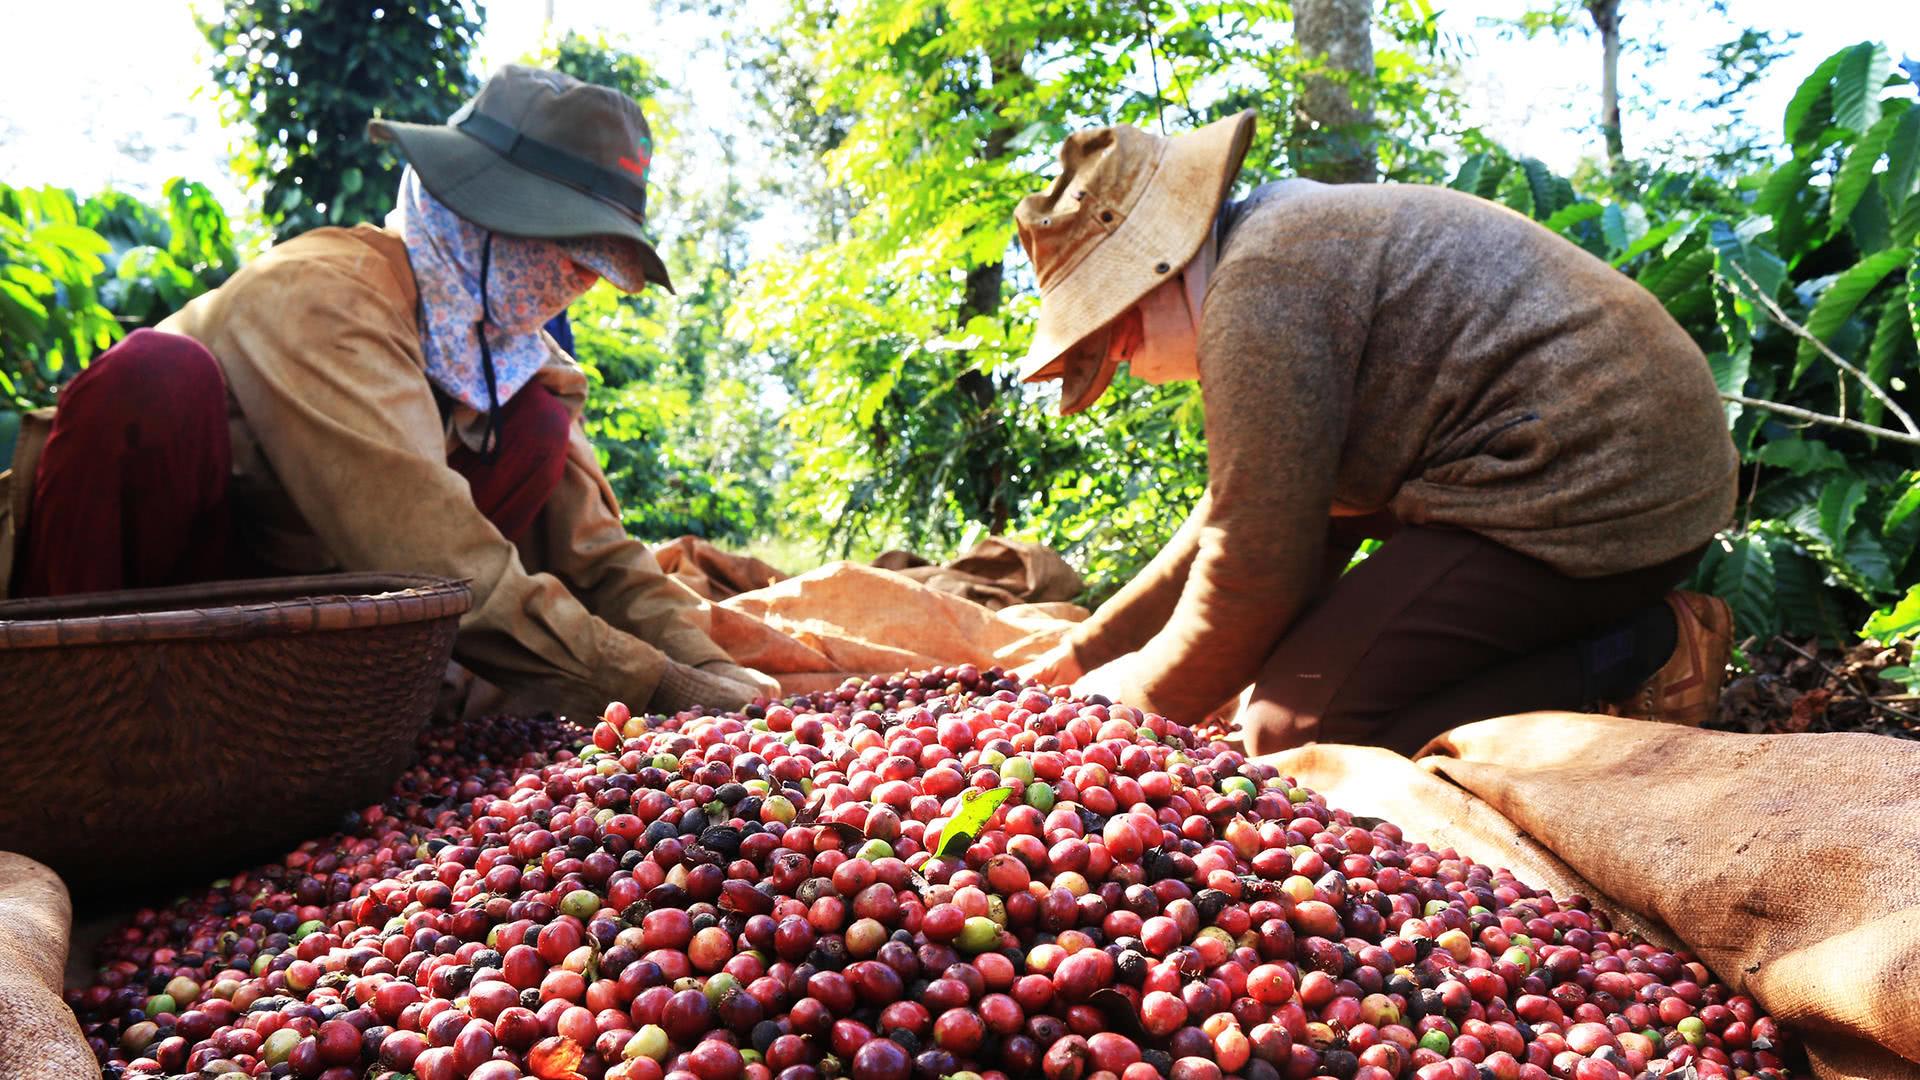 Dù thị trường thế giới có nhiều khó khăn, xuất khẩu cà phê của Việt Nam vẫn duy trì tốc độ tăng trưởng đáng khích lệ, đạt 8,2%/năm với kim ngạch bình quân 3,13 tỷ USD/năm giai đoạn 2011 - 2018